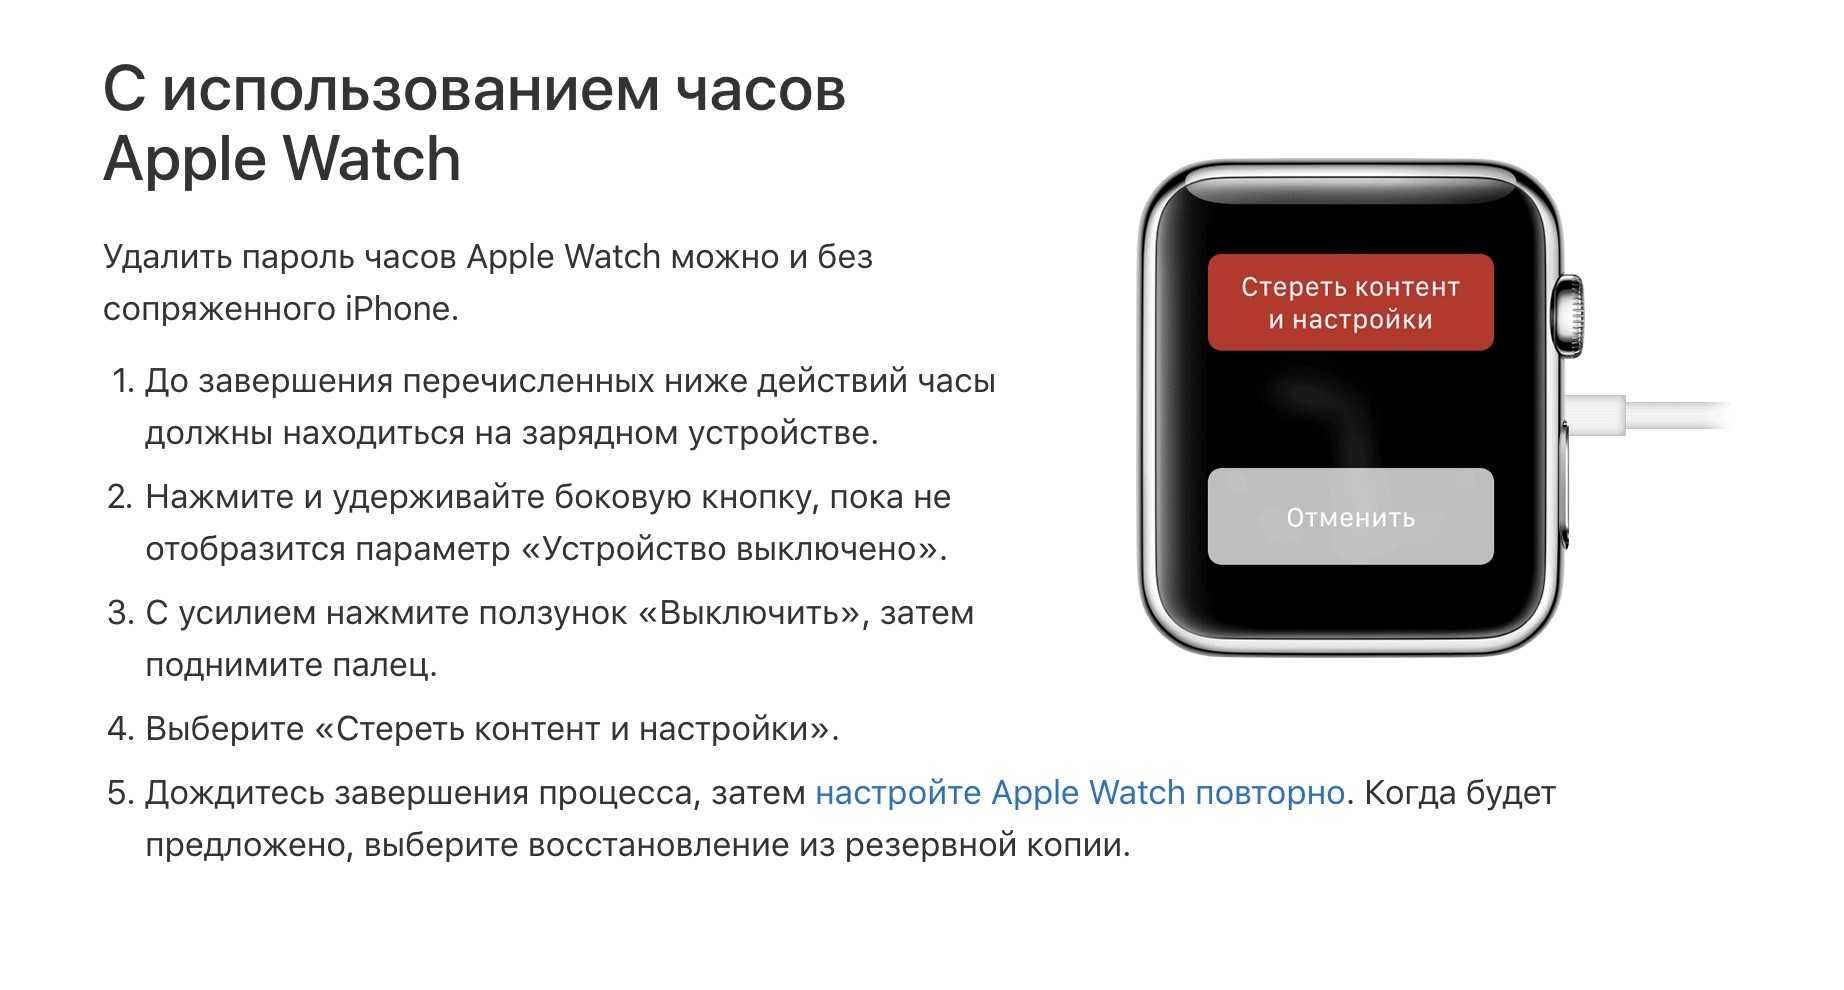 Как перезагрузить часы watch. Перезагрузка Эппл вотч. Перезагрузка часов Apple. Как убрать пароль с эпл вотч. Как перезагрузить Apple watch.